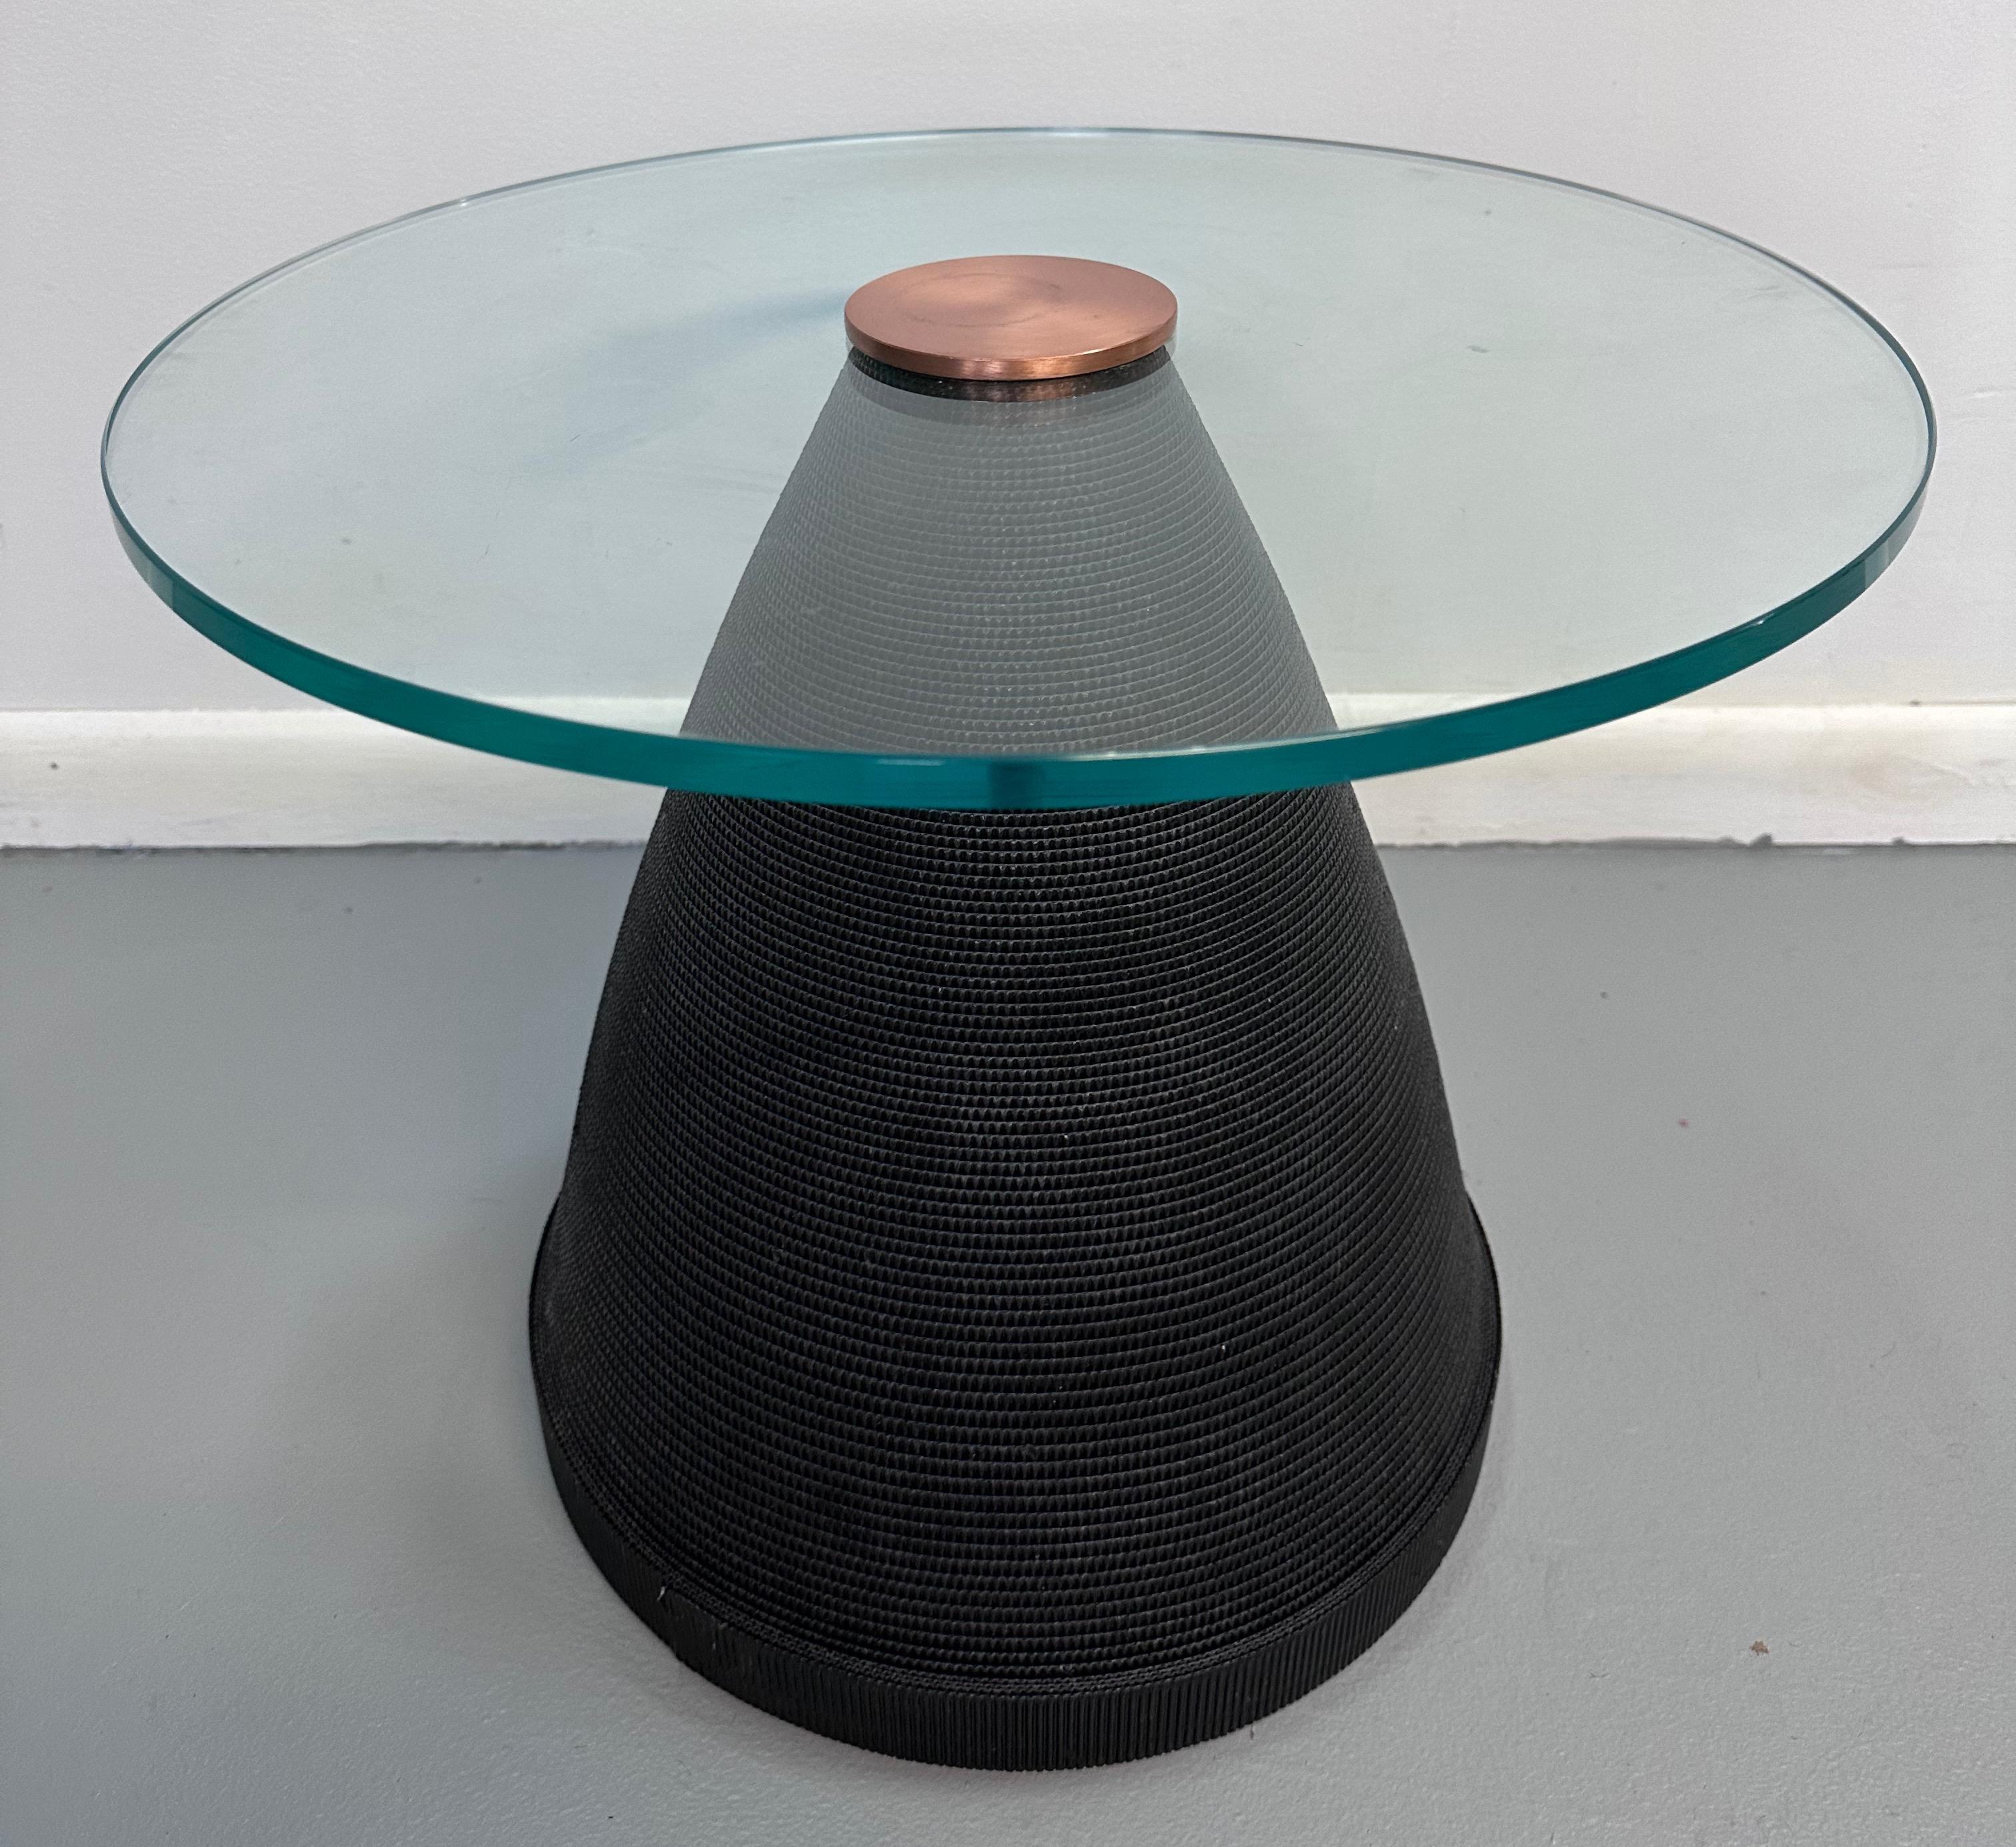 Magnifique table d'appoint post-moderne construite en carton ondulé noir enveloppé dans une forme conique, surmontée d'un plateau en verre de 20 pouces de diamètre et coiffée d'un joli disque en laiton qui verrouille la table en place. 

La table